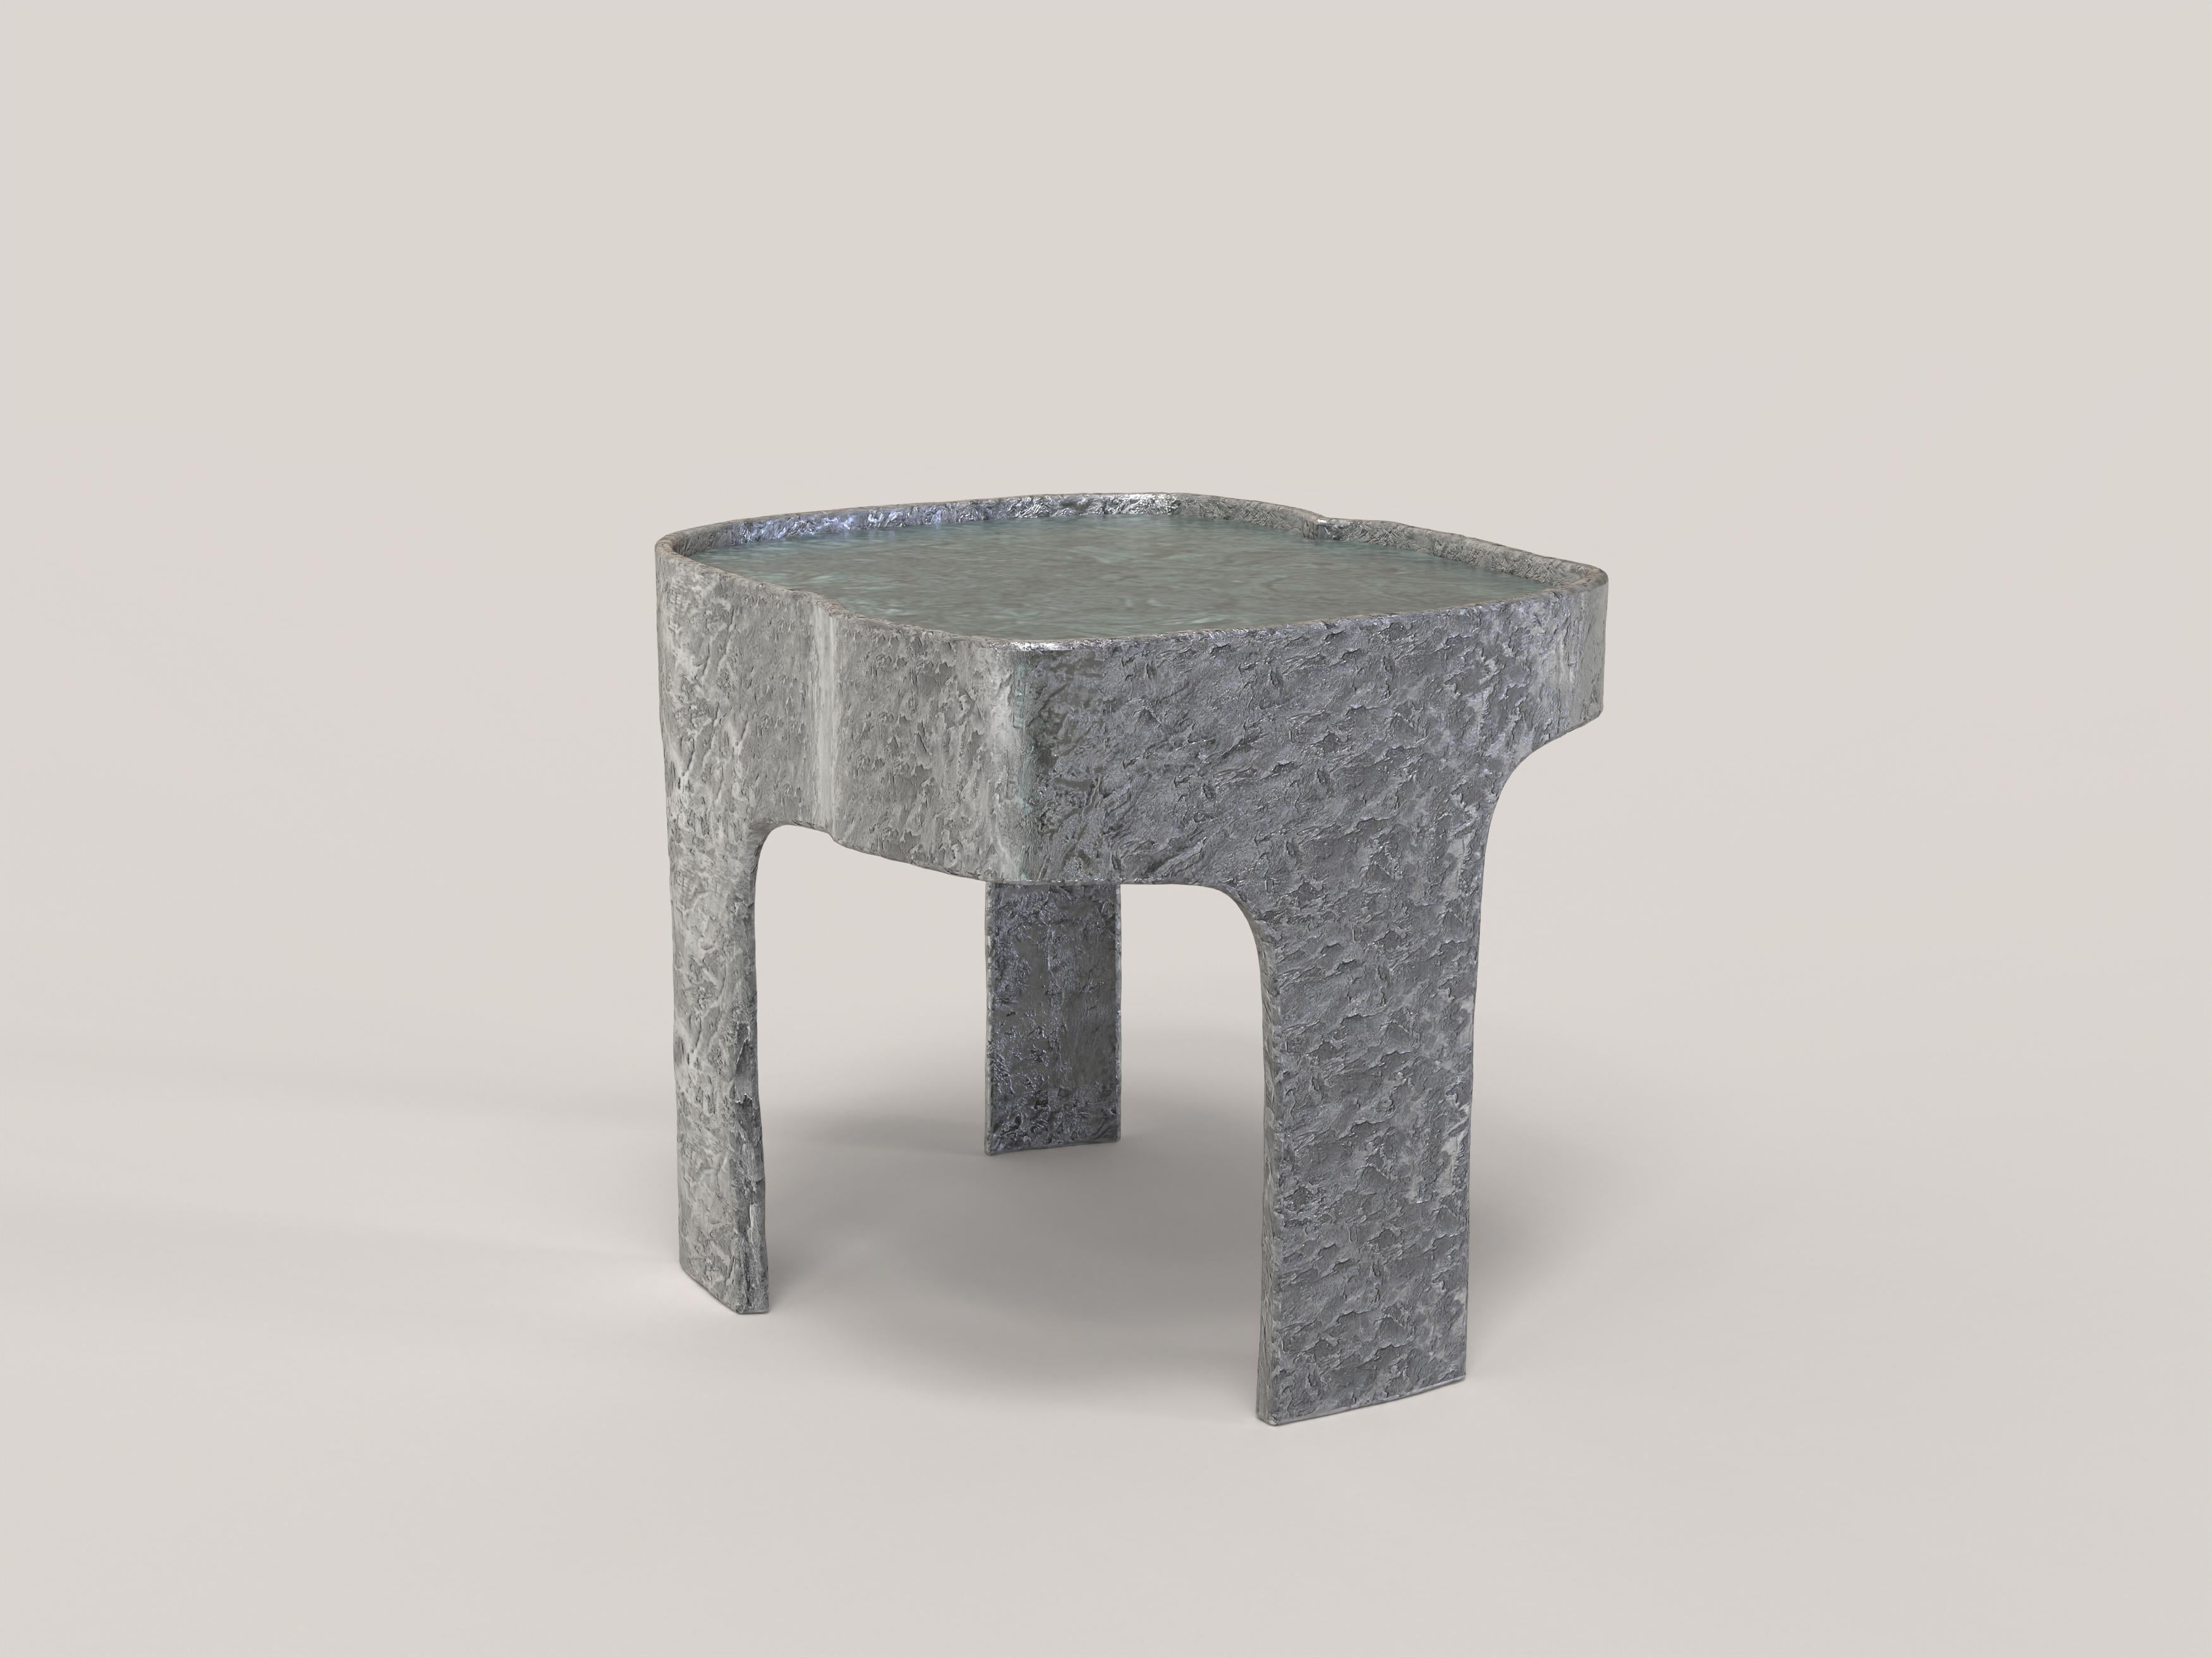 Sumatra V1 est une table d'appoint du XXIe siècle réalisée par des artisans italiens en aluminium avec un extraordinaire plan en marbre vert du Guatemala. Il fait partie du langage du design Sumatra, développé par l'équipe de recherche artistique de